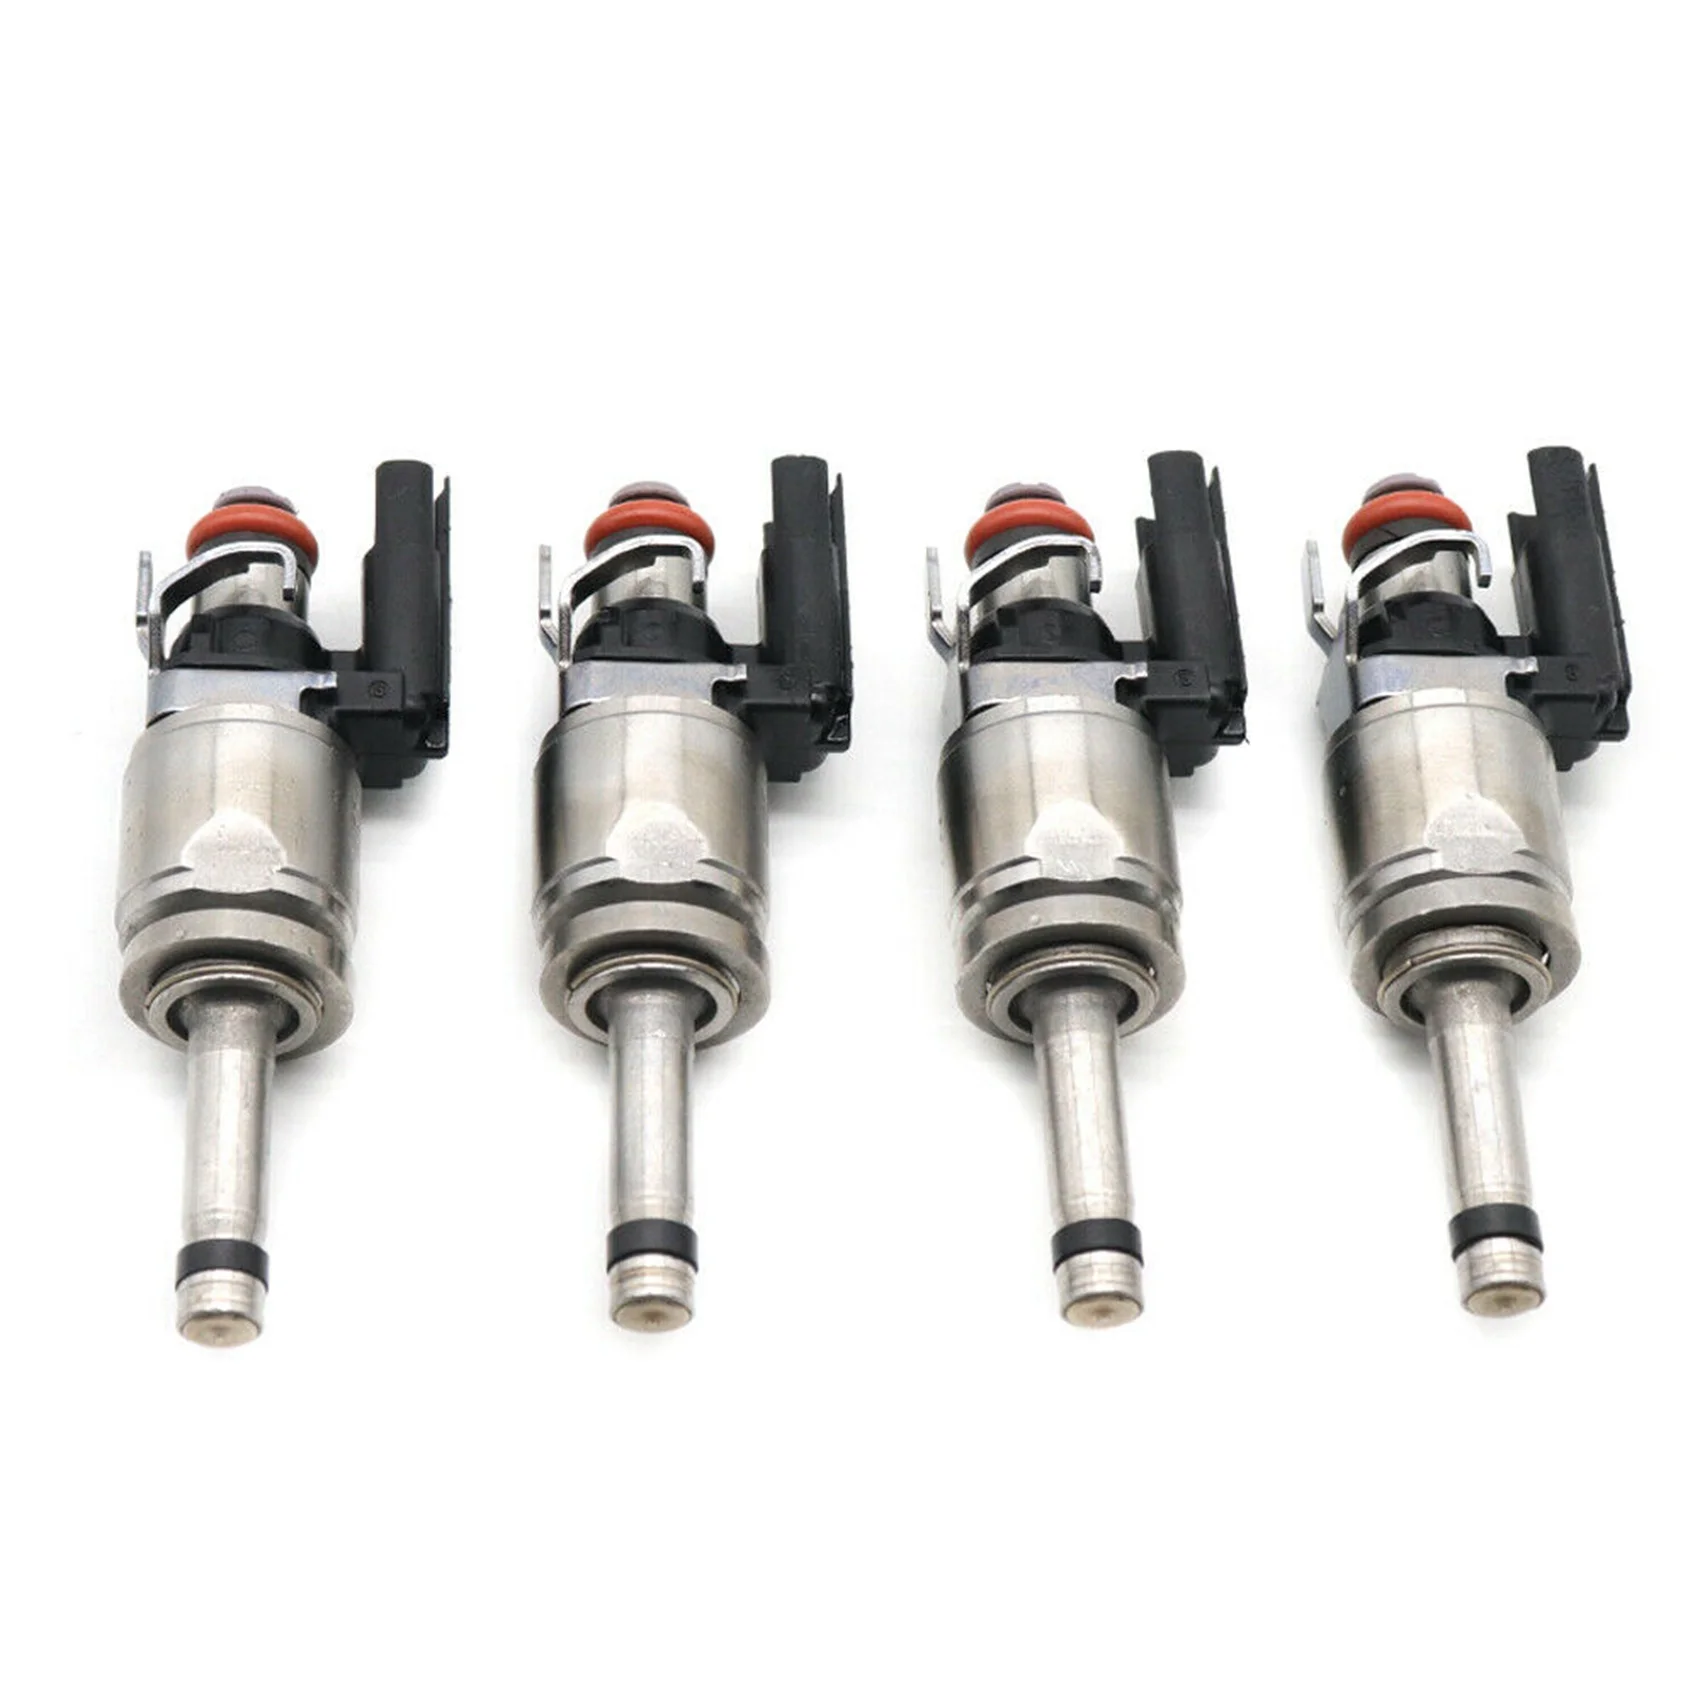 

4Pcs Fuel Injectors 31478608 for Volvo S60 S80 S90 V60 XC60 XC70 2.0 L4 3147-8608 31336653 31478609 31465786